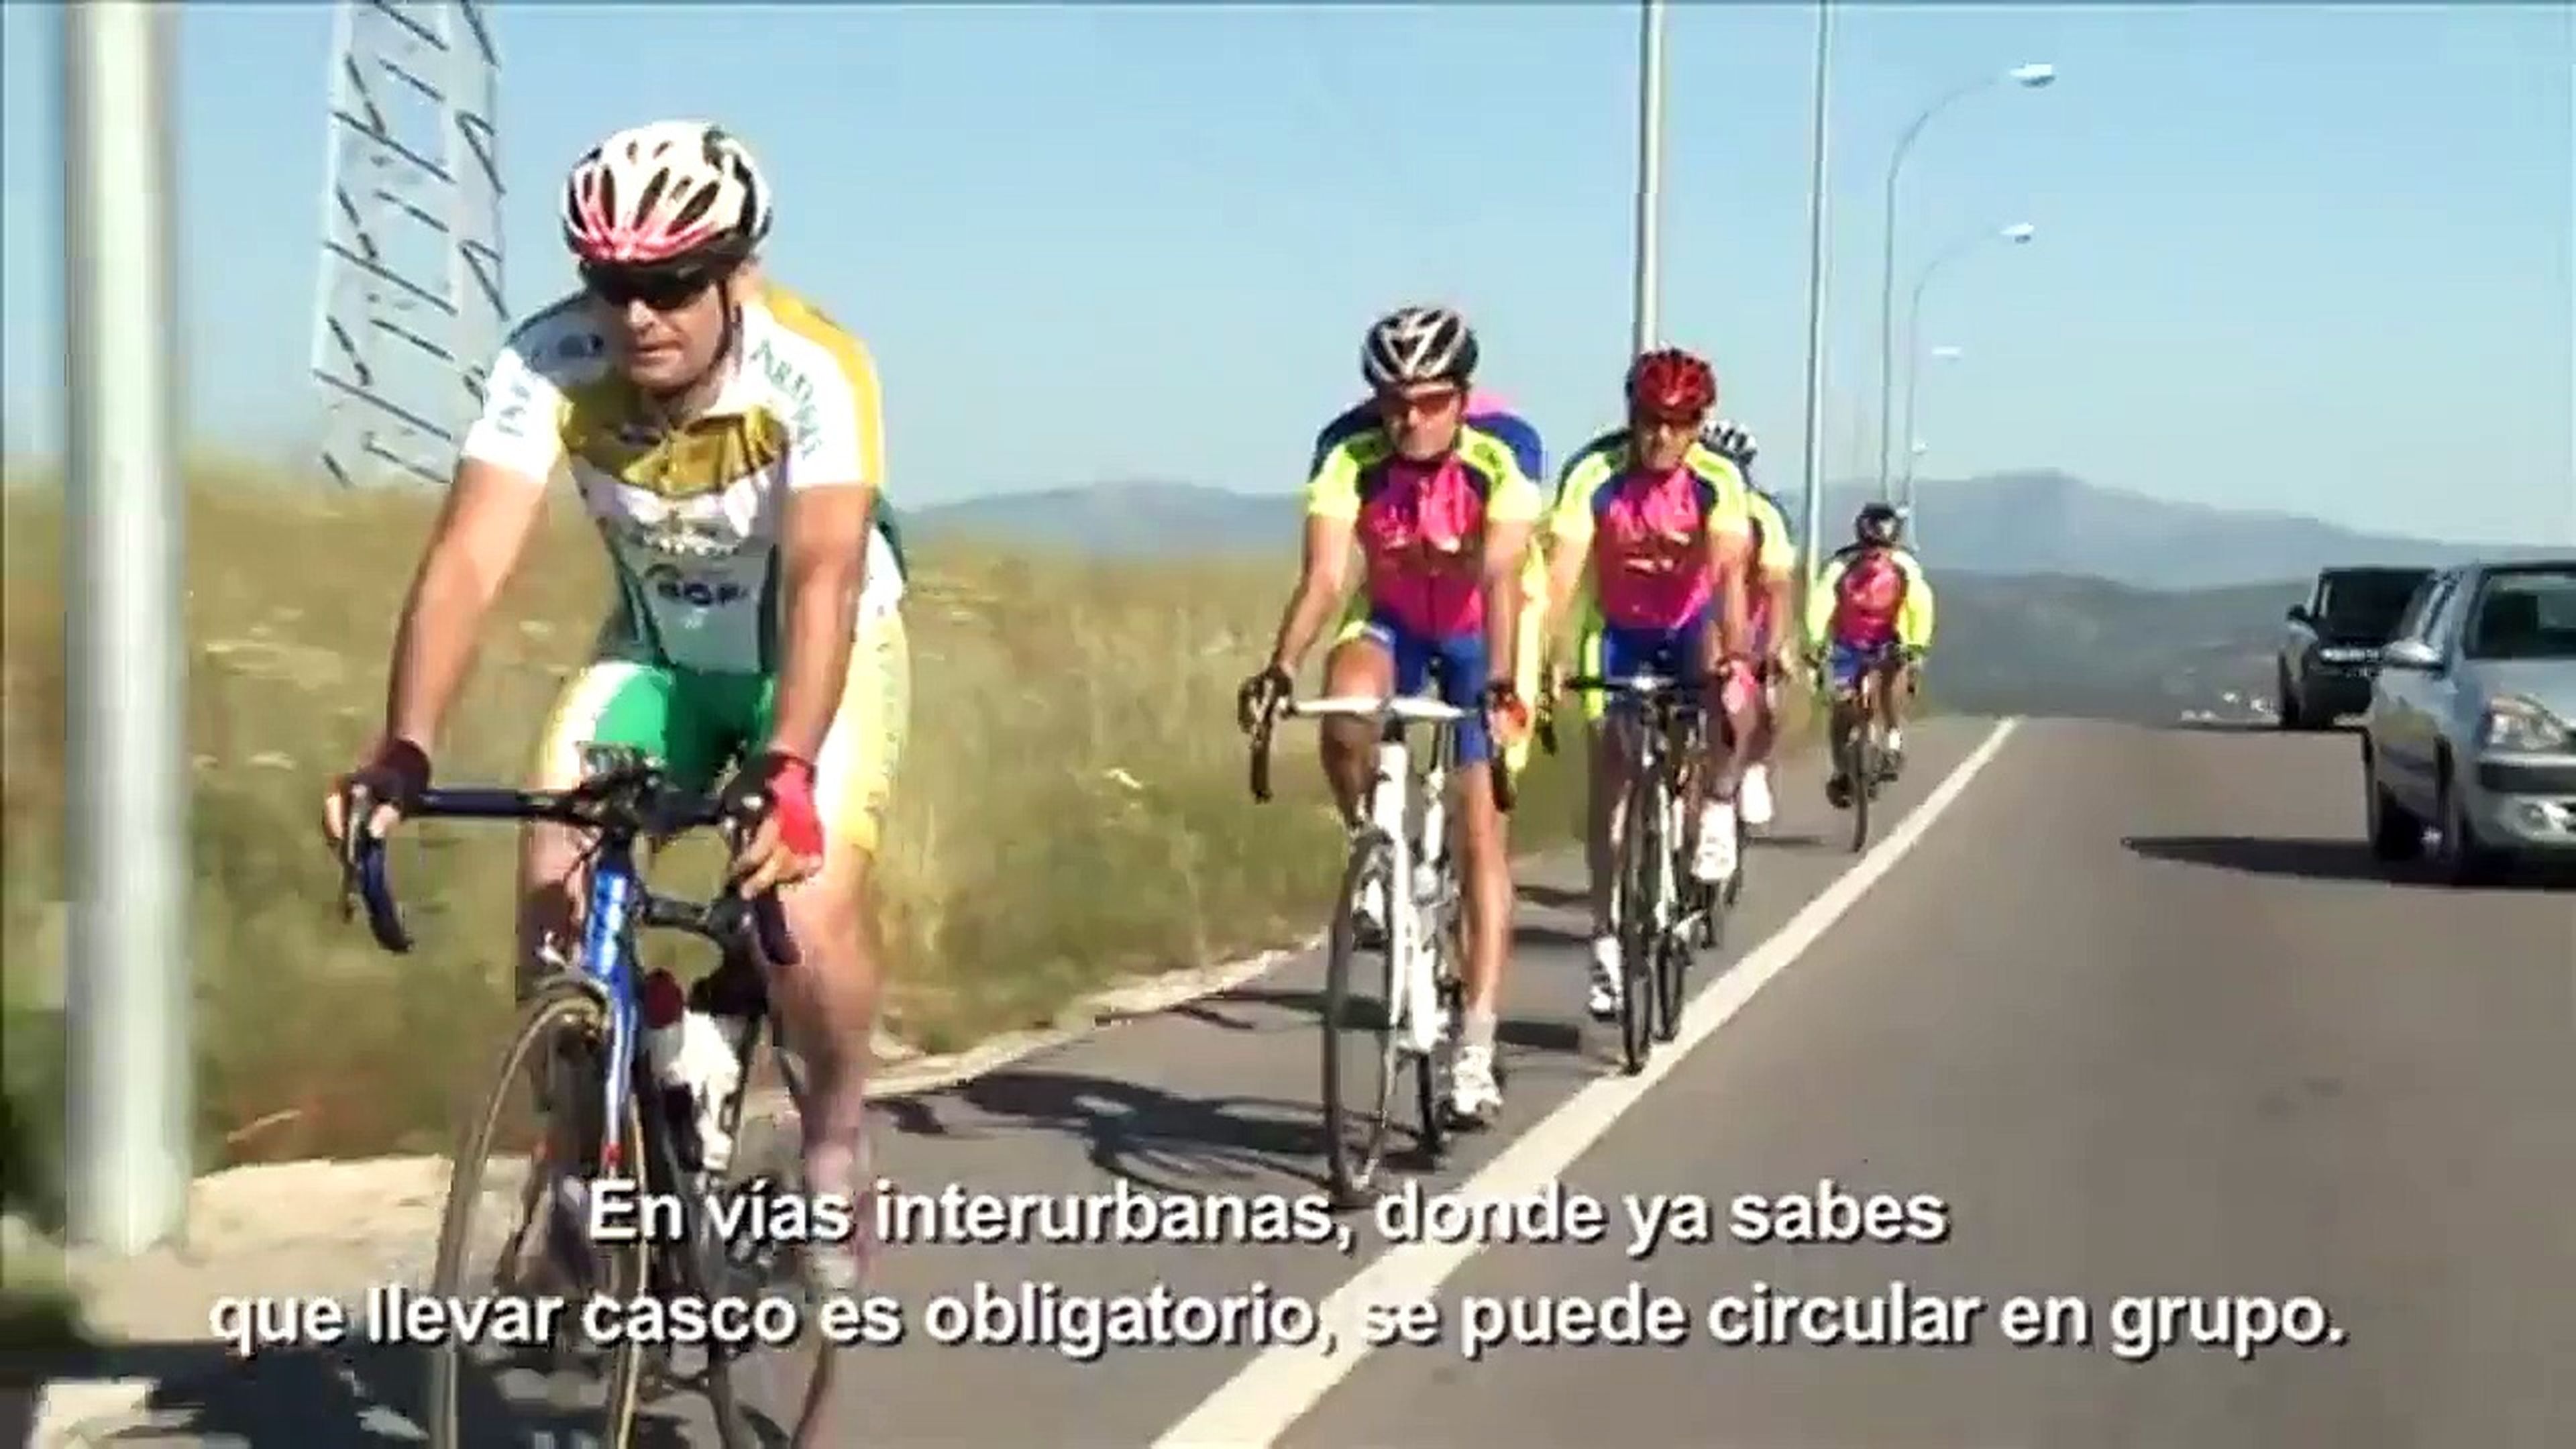 VÍDEO: así debes circular en grupo cuando vas en bicicleta